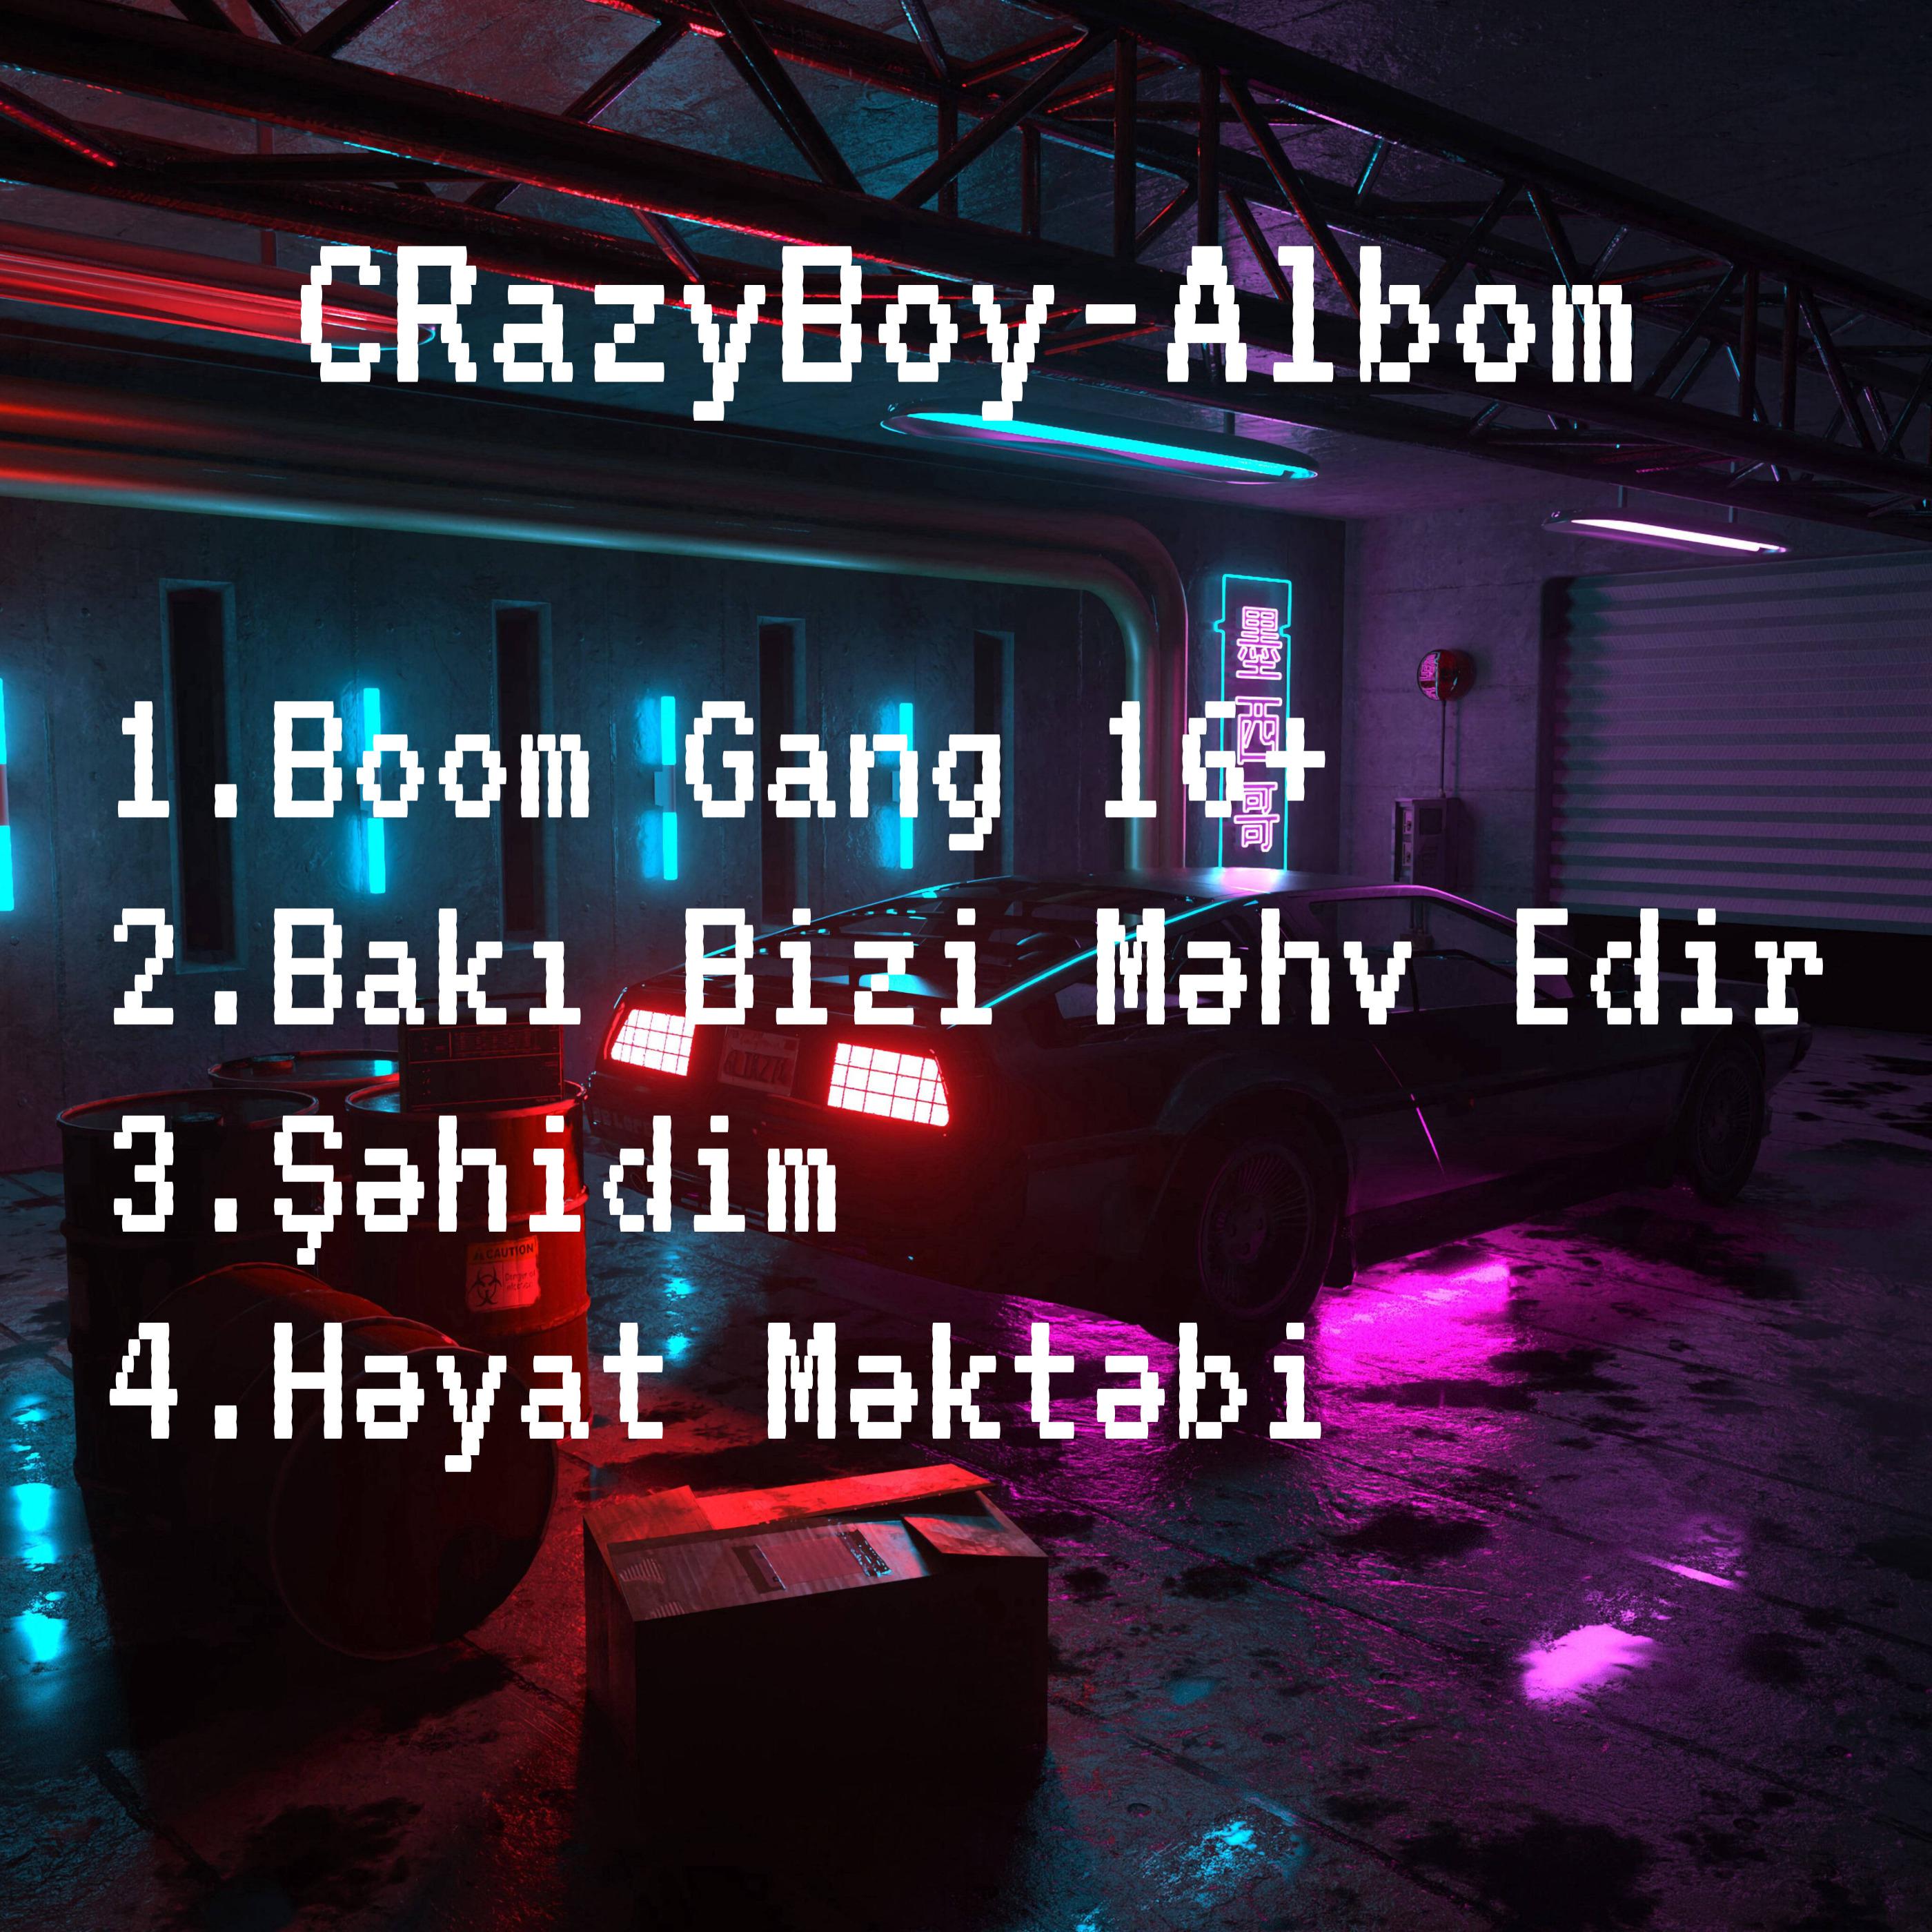 13 Lirika - Crazyboy - Bakı Bizi Məhv Edir (nəq. Ateo)